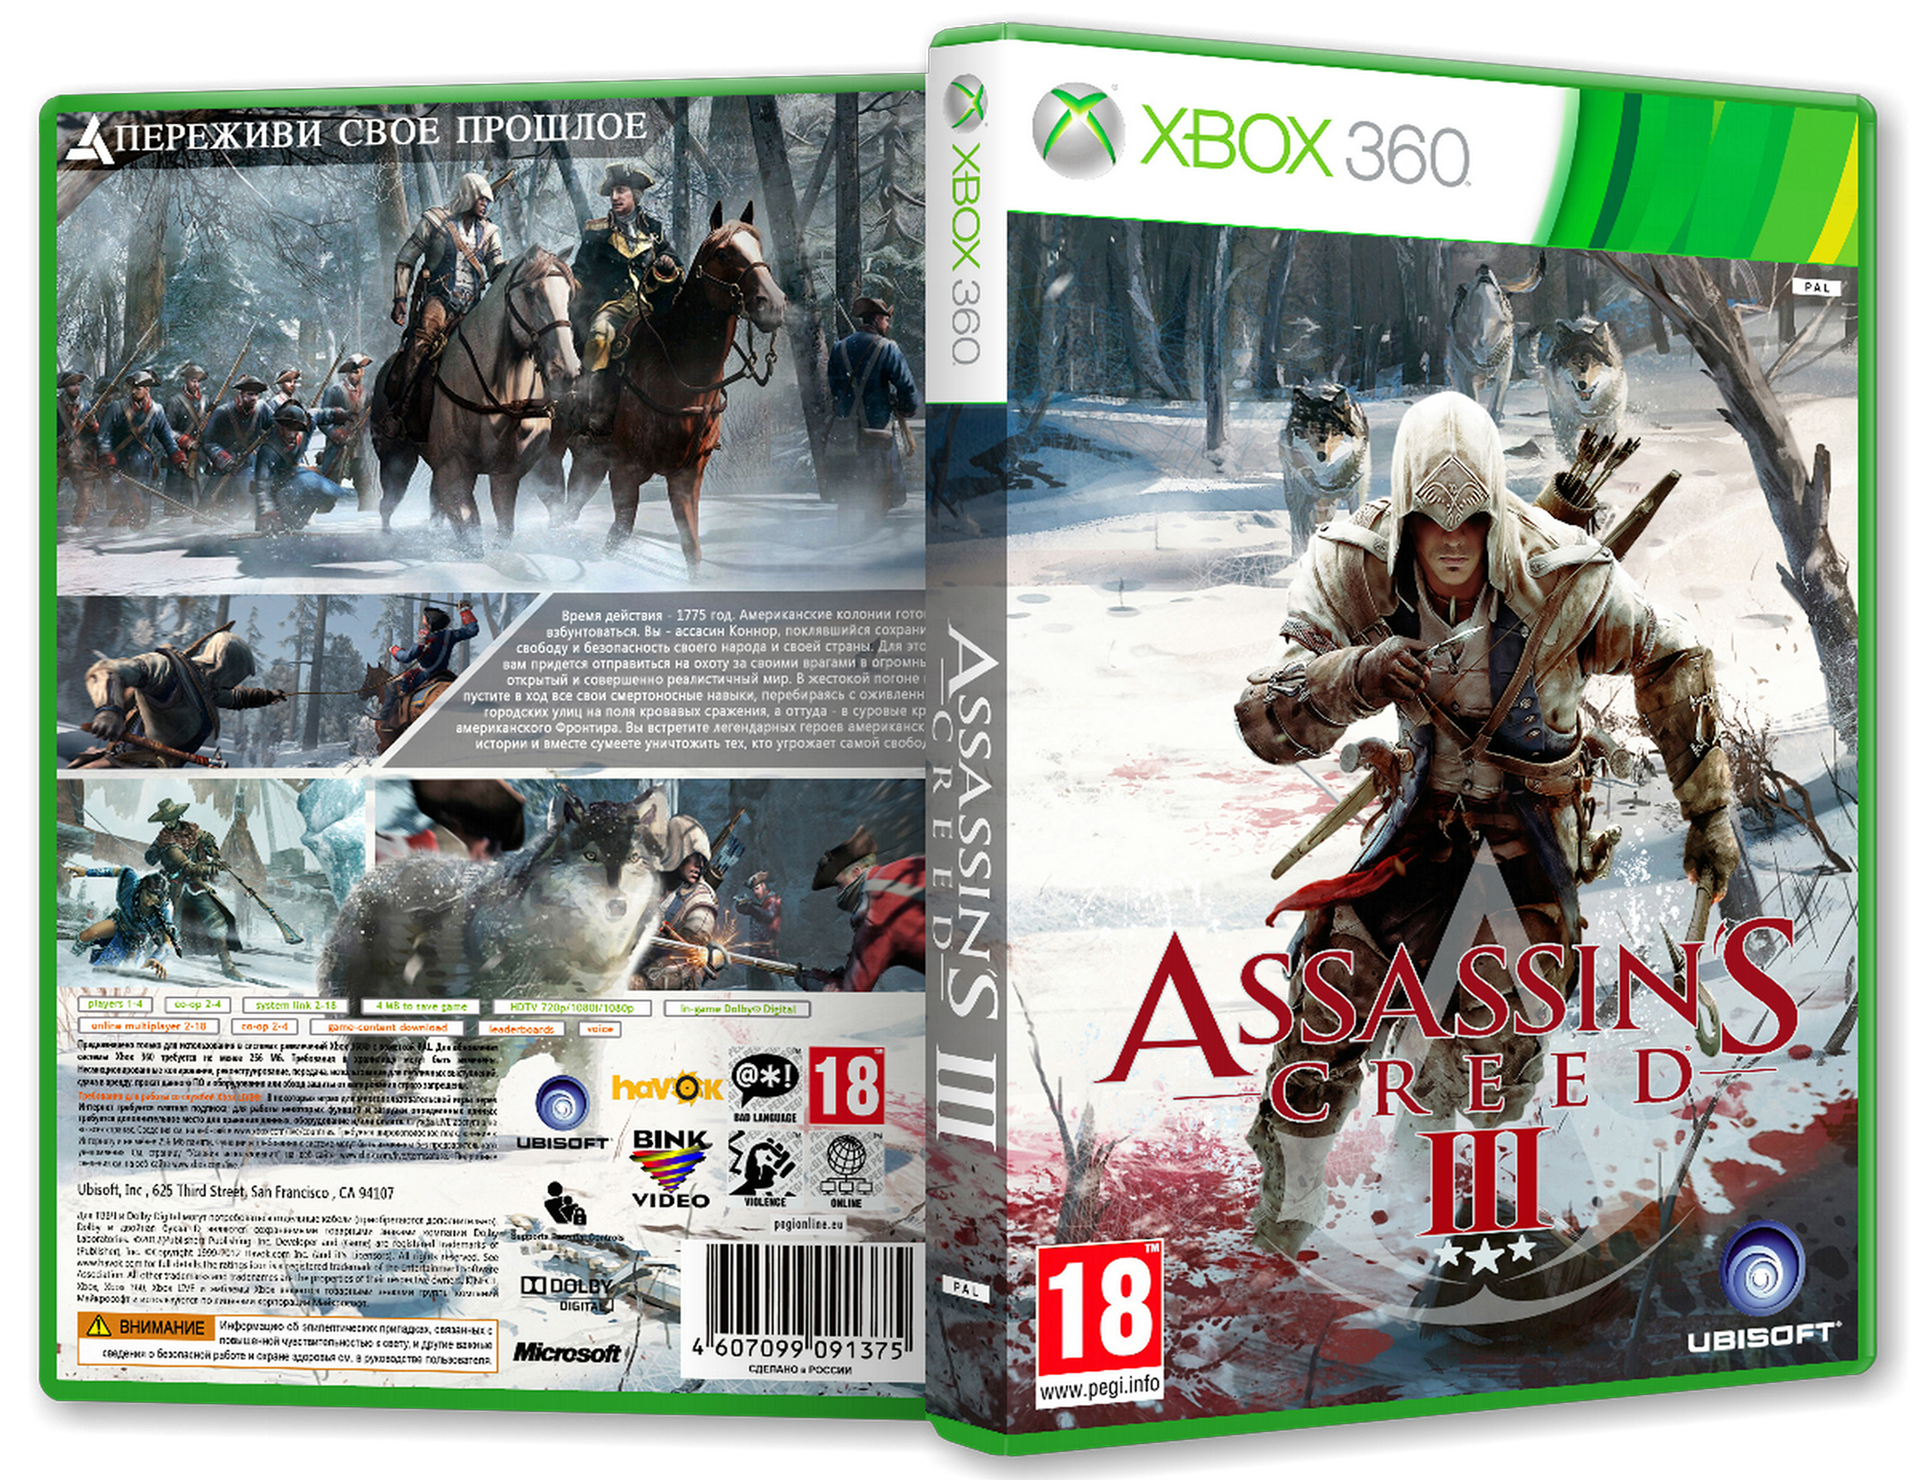 Ассасин хбокс. Ассасин Крид 3 Xbox 360. Assassins Creed 3 [Xbox 360]. Ассасин Крид 3 на хбокс 360. Assassins Creed 3 диск для Xbox 360.